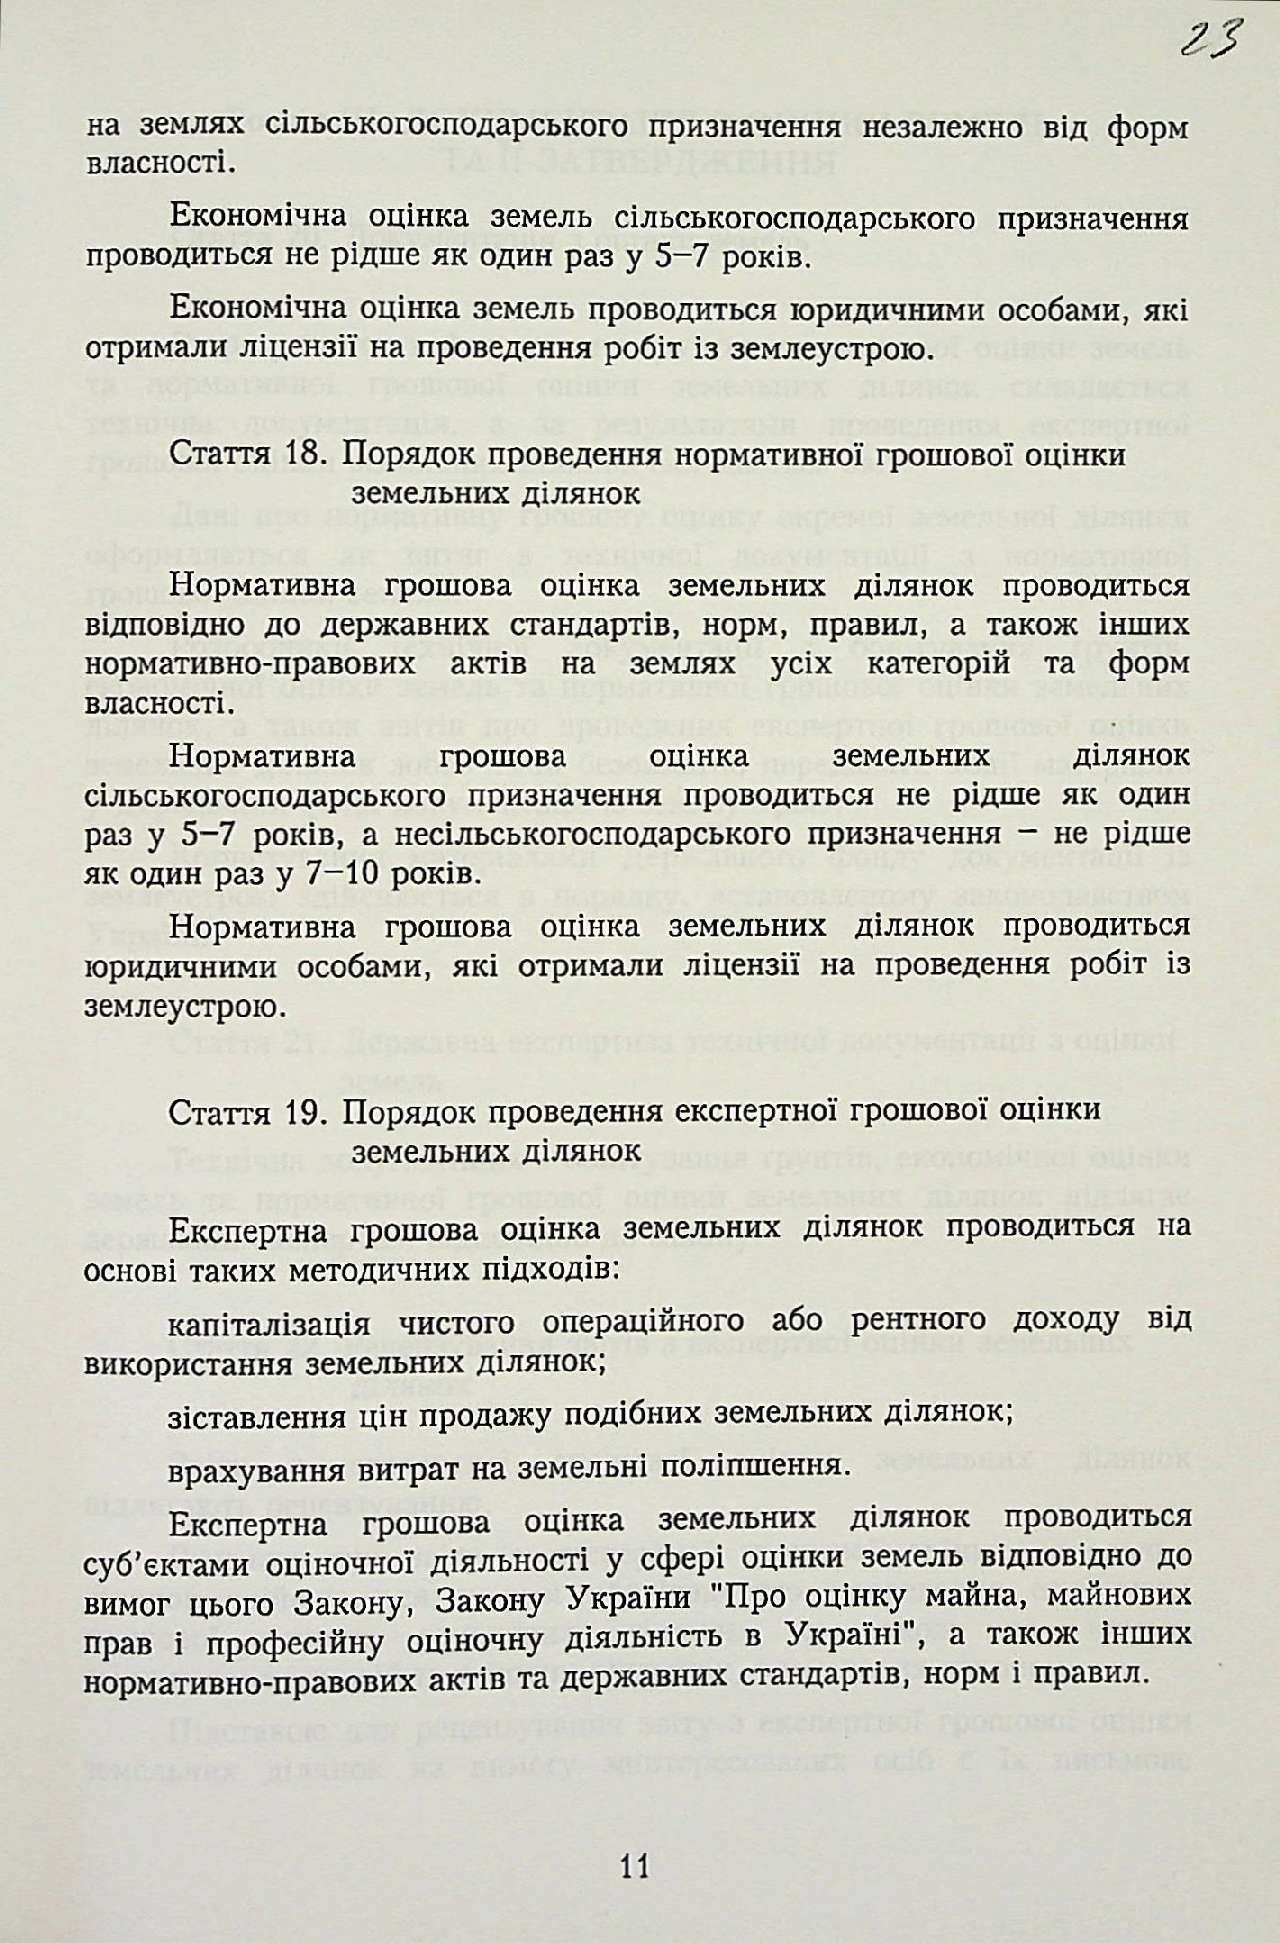 Закон України від 11 грудня 2003 р. № 1378-ІV «Про оцінку земель».